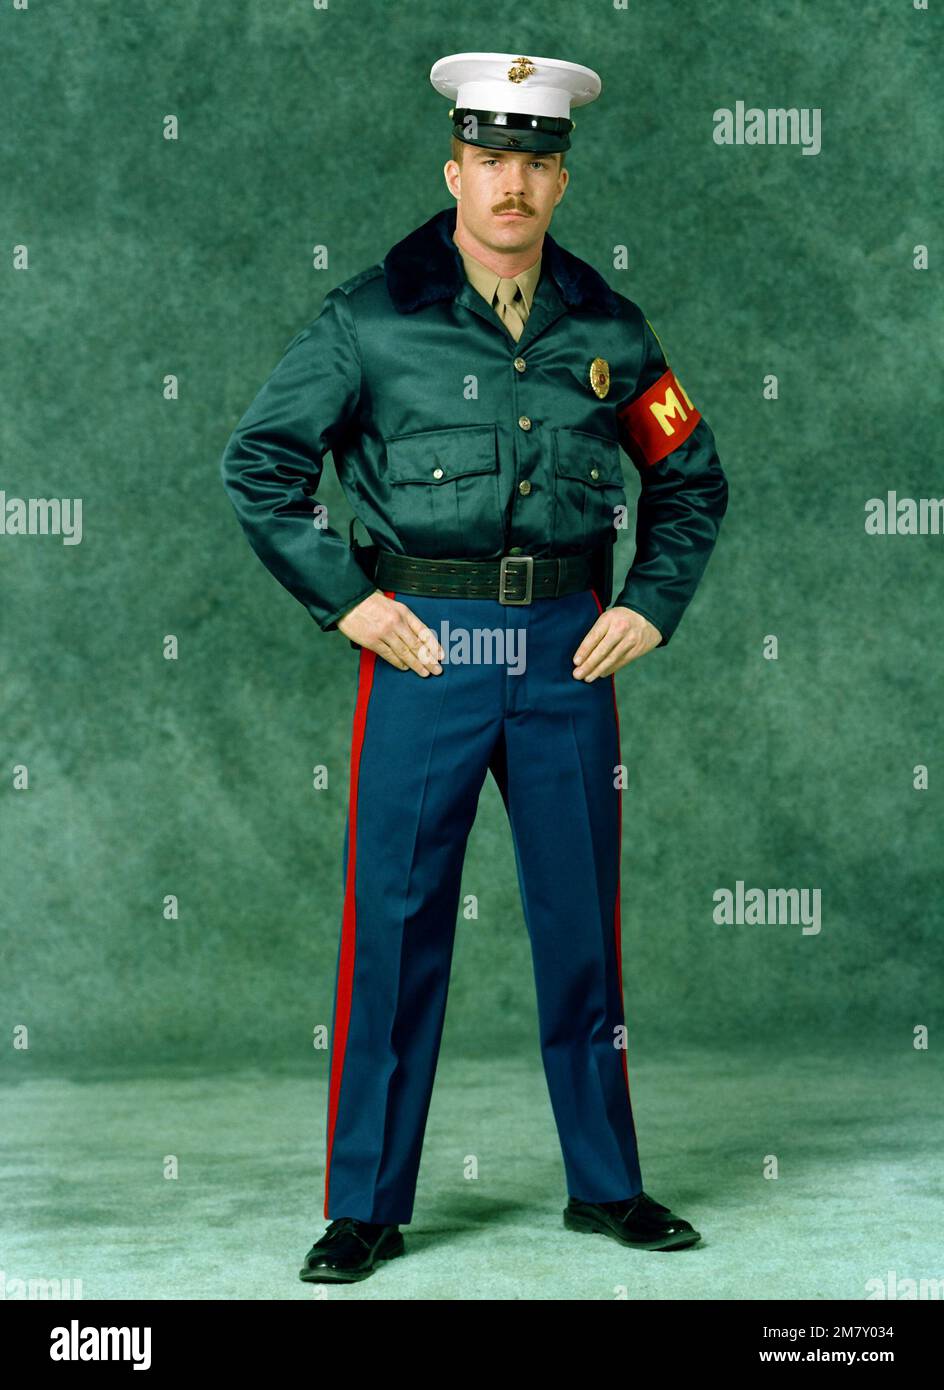 Un SGT marino. È vestito in una divisa invernale della polizia militare (MP).  Indossa pantaloni blu, una giacca marrone, un berretto bianco da caserma,  un distintivo di polizia, una fascia da braccio